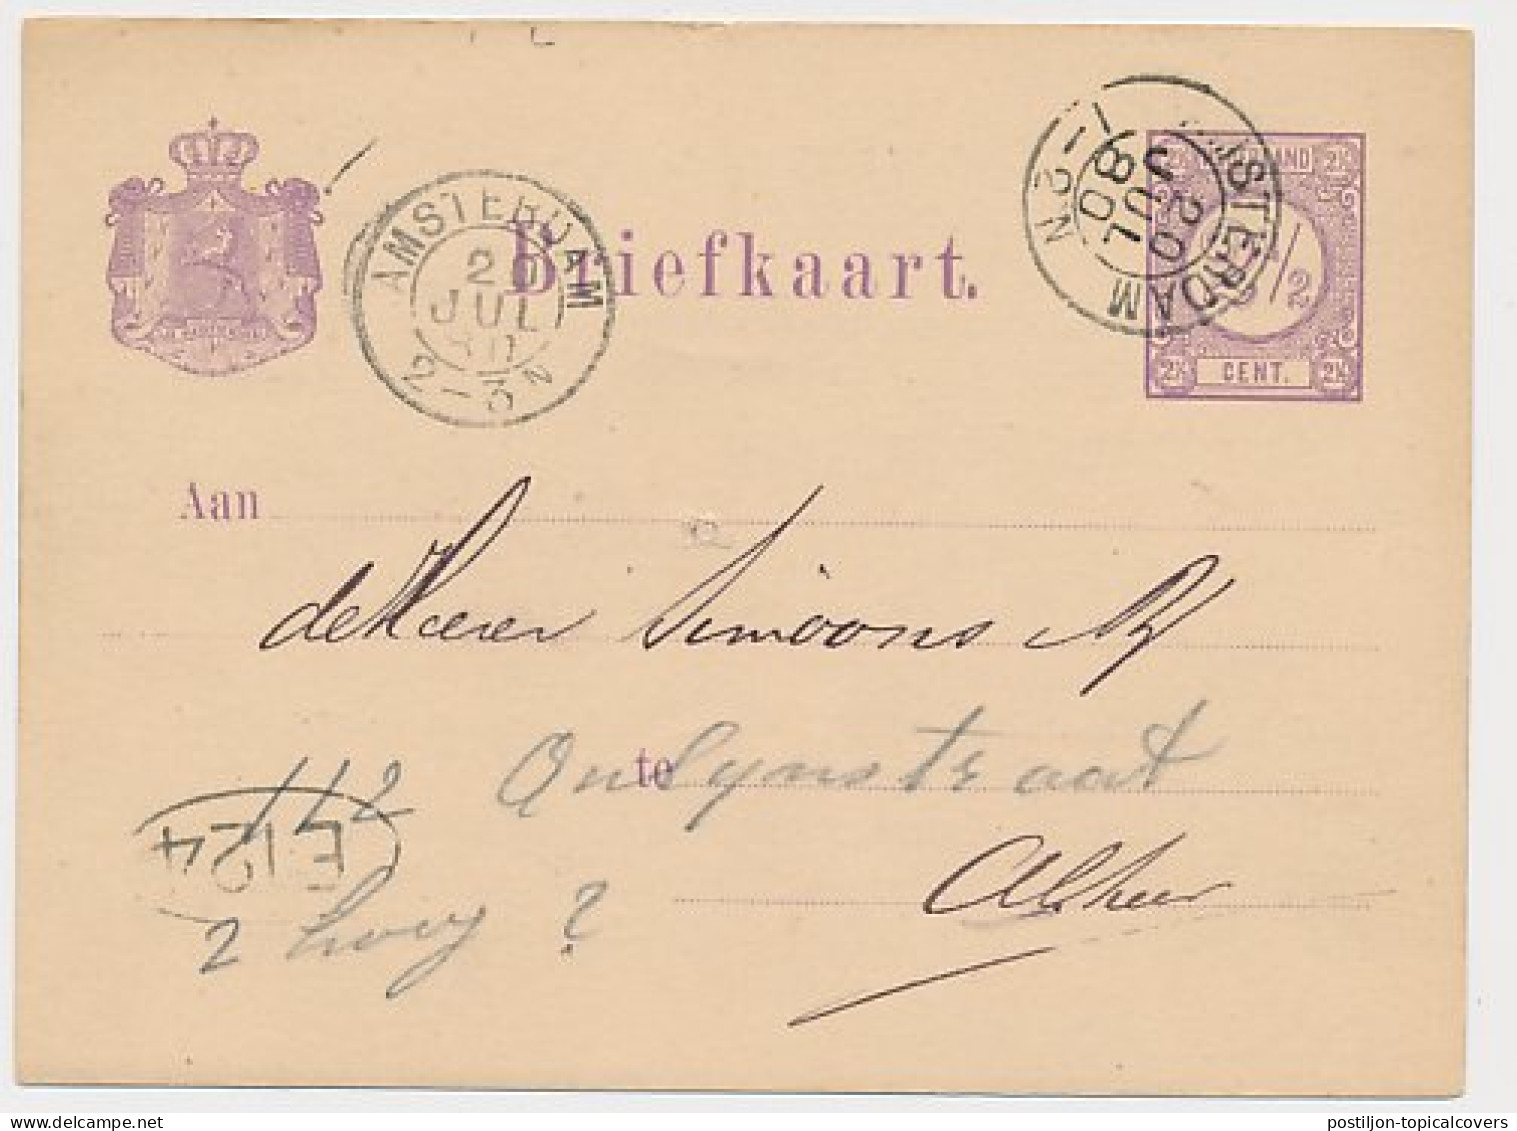 Briefkaart G. 18 Particulier Bedrukt Locaal Te Amsterdam 1880 - Postwaardestukken